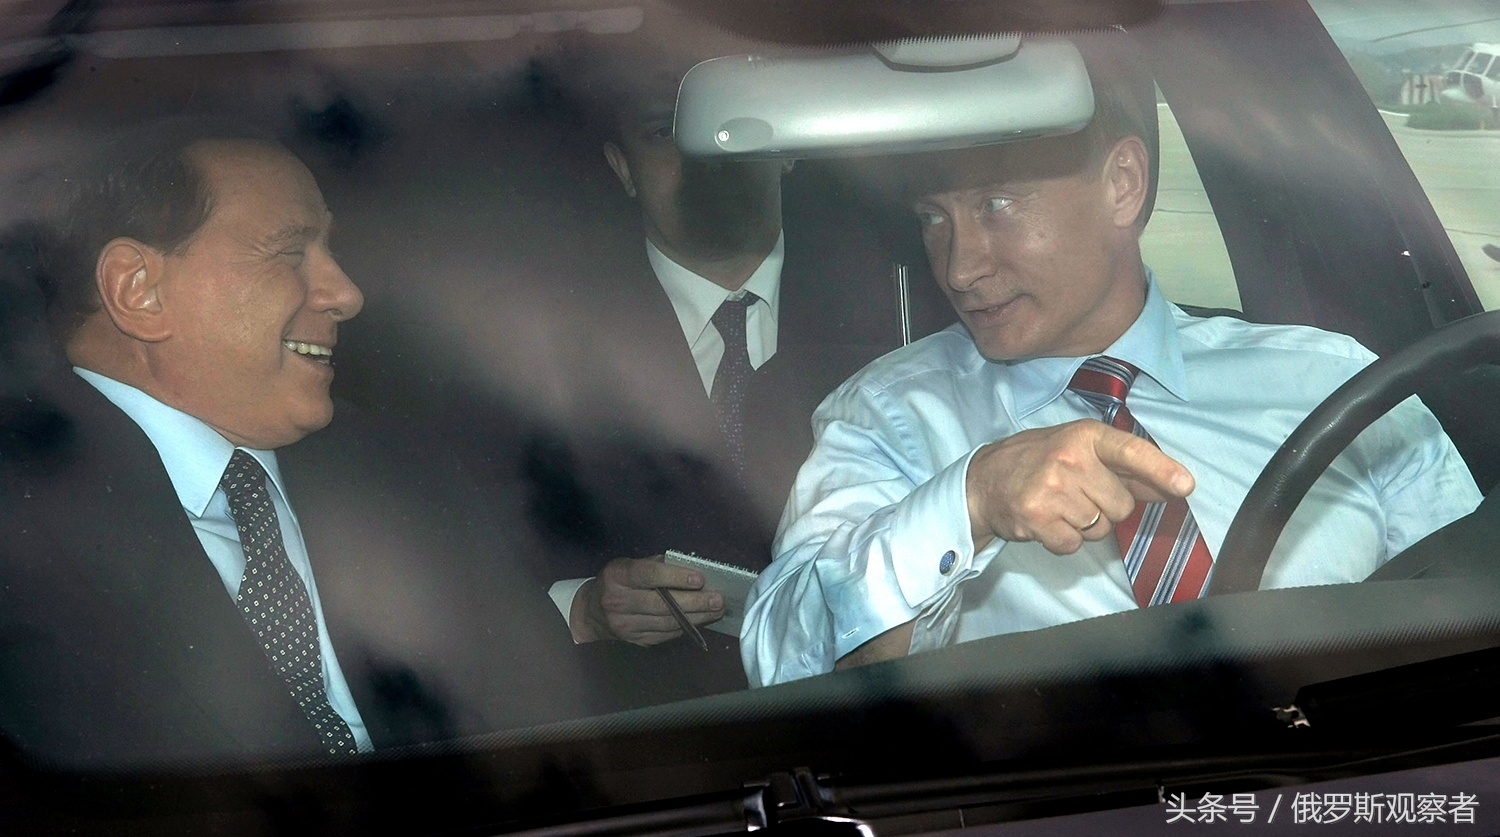 2009年,普京亲自驾车在索契机场迎接意大利前总理贝卢斯科尼普京正要